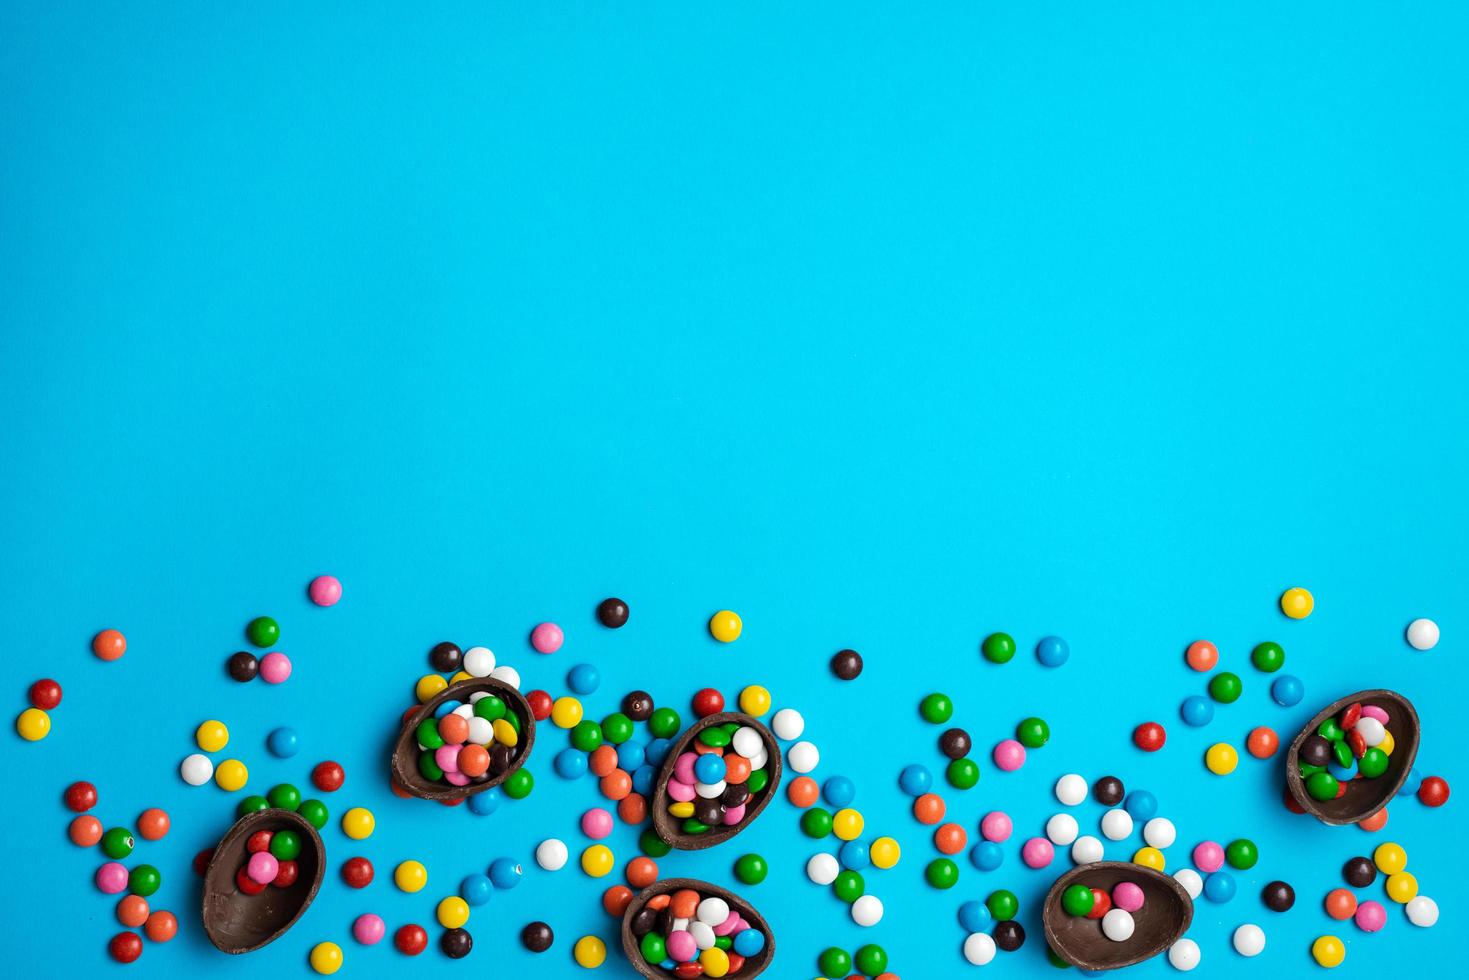 påskchokladägg med färgglad explosion av godis och godis på en blå bakgrund. platt låg. toppvy foto